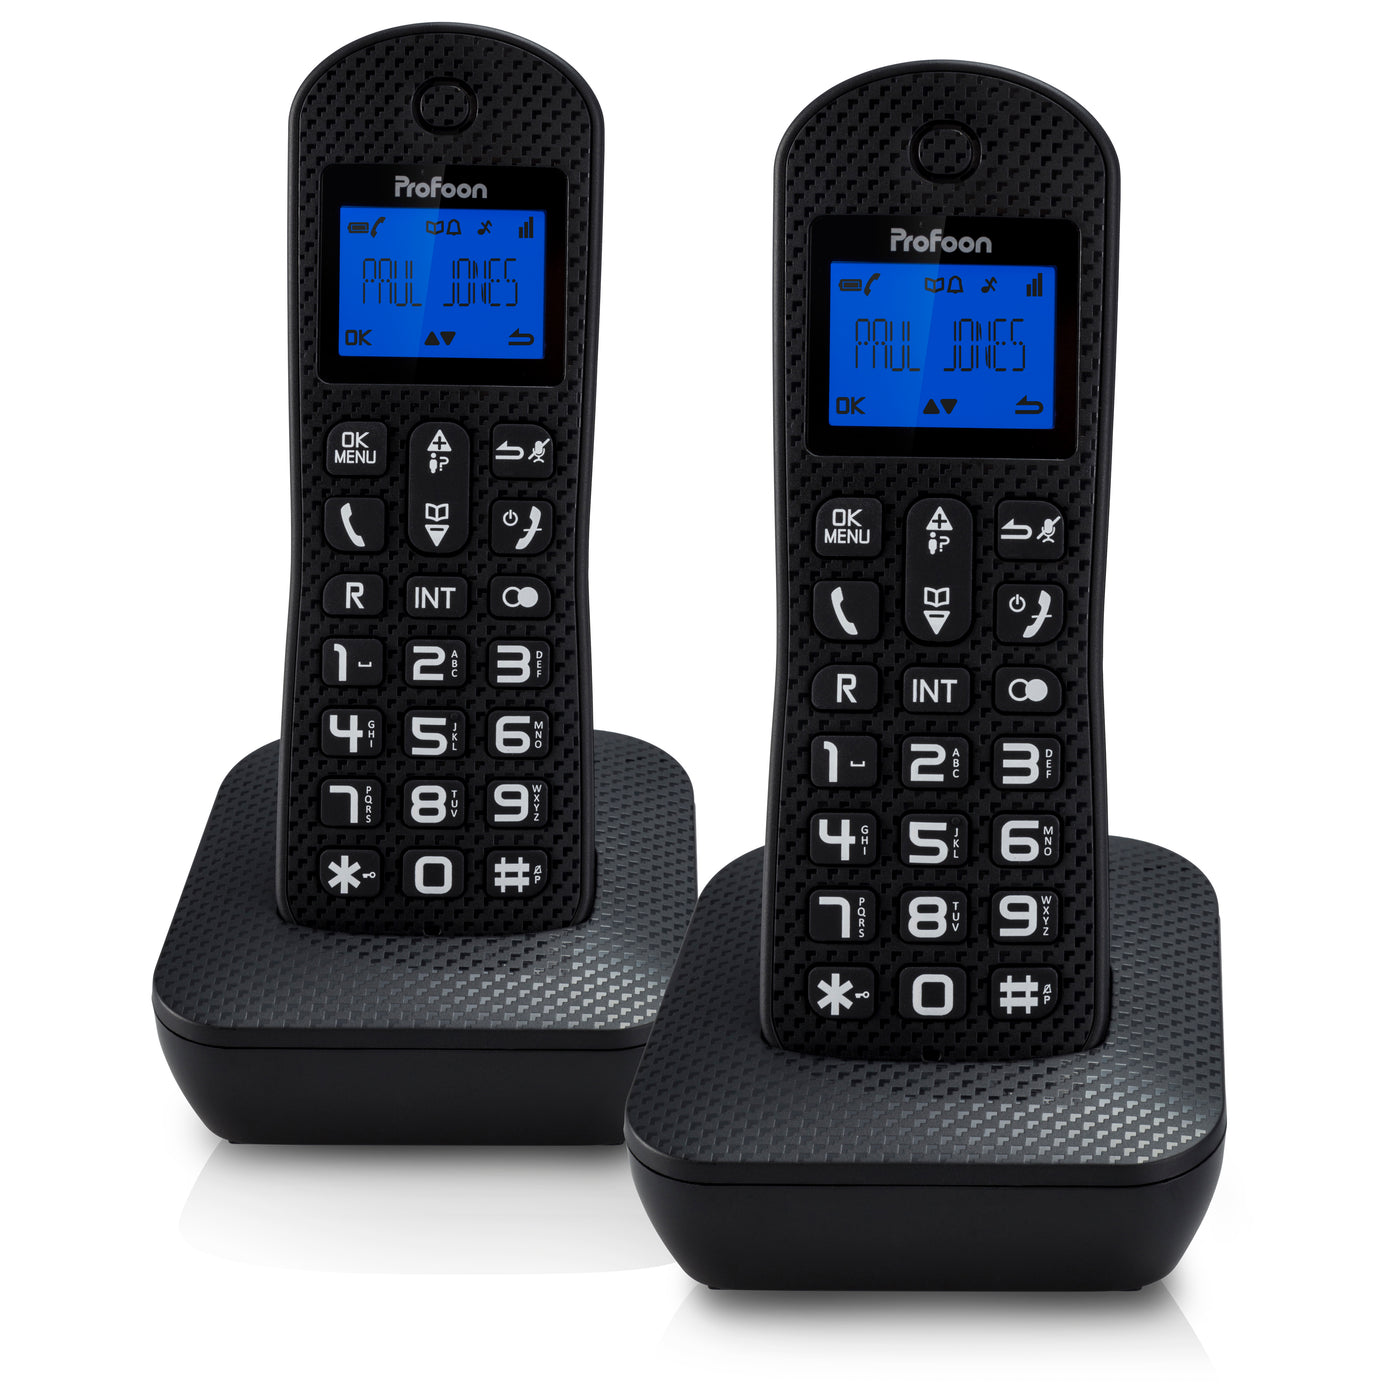 Profoon PDX-525ZT - DECT-Telefon mit Anrufbeantworter und 2 Mobilteilen, schwarz